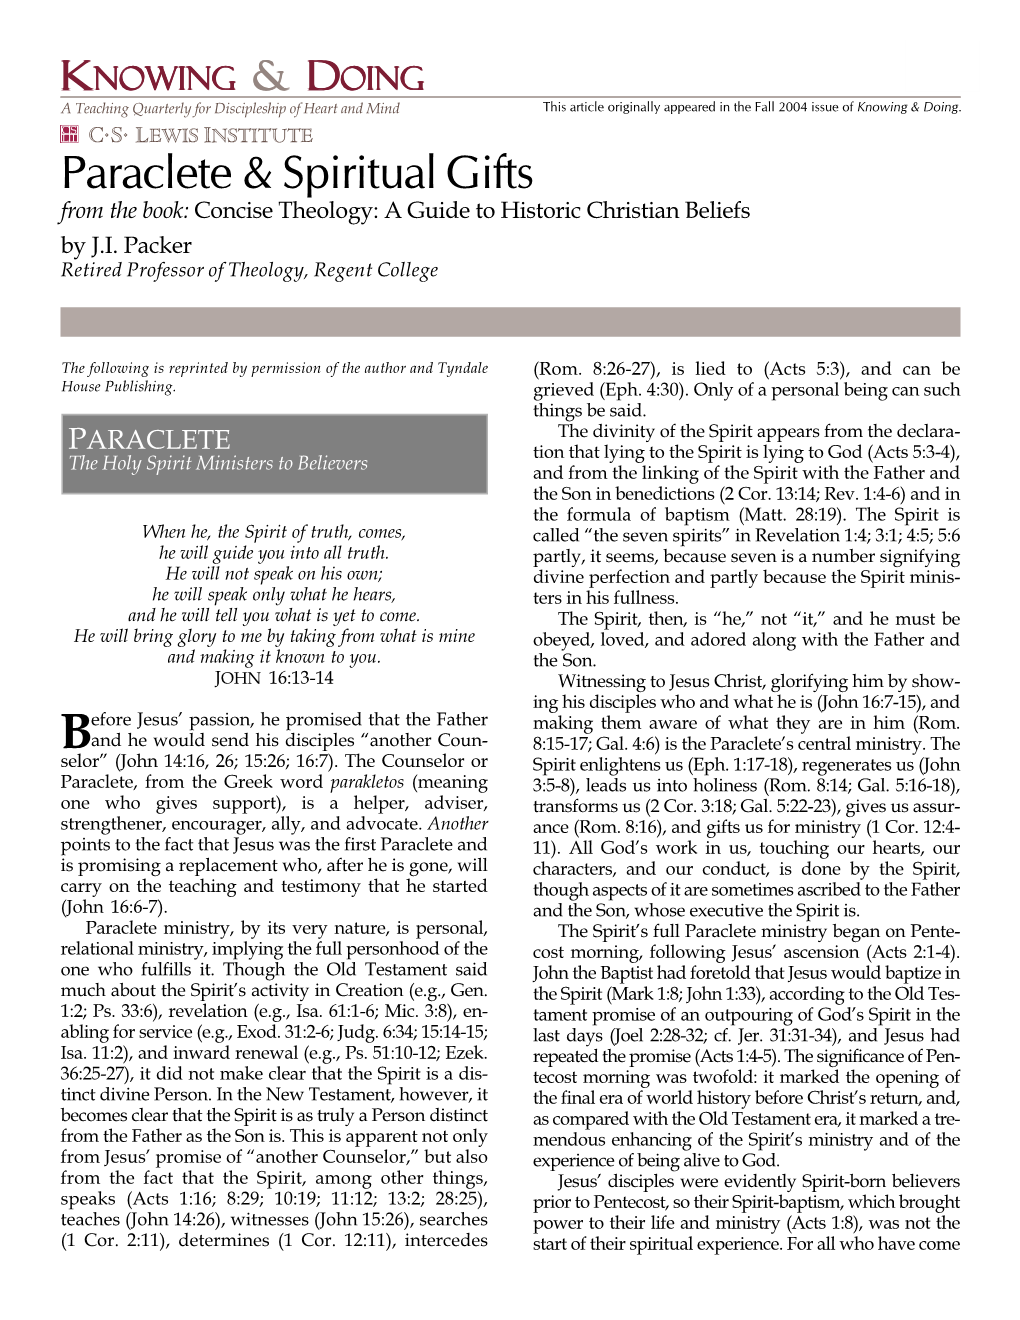 Paraclete & Spiritual Gifts (Packer)